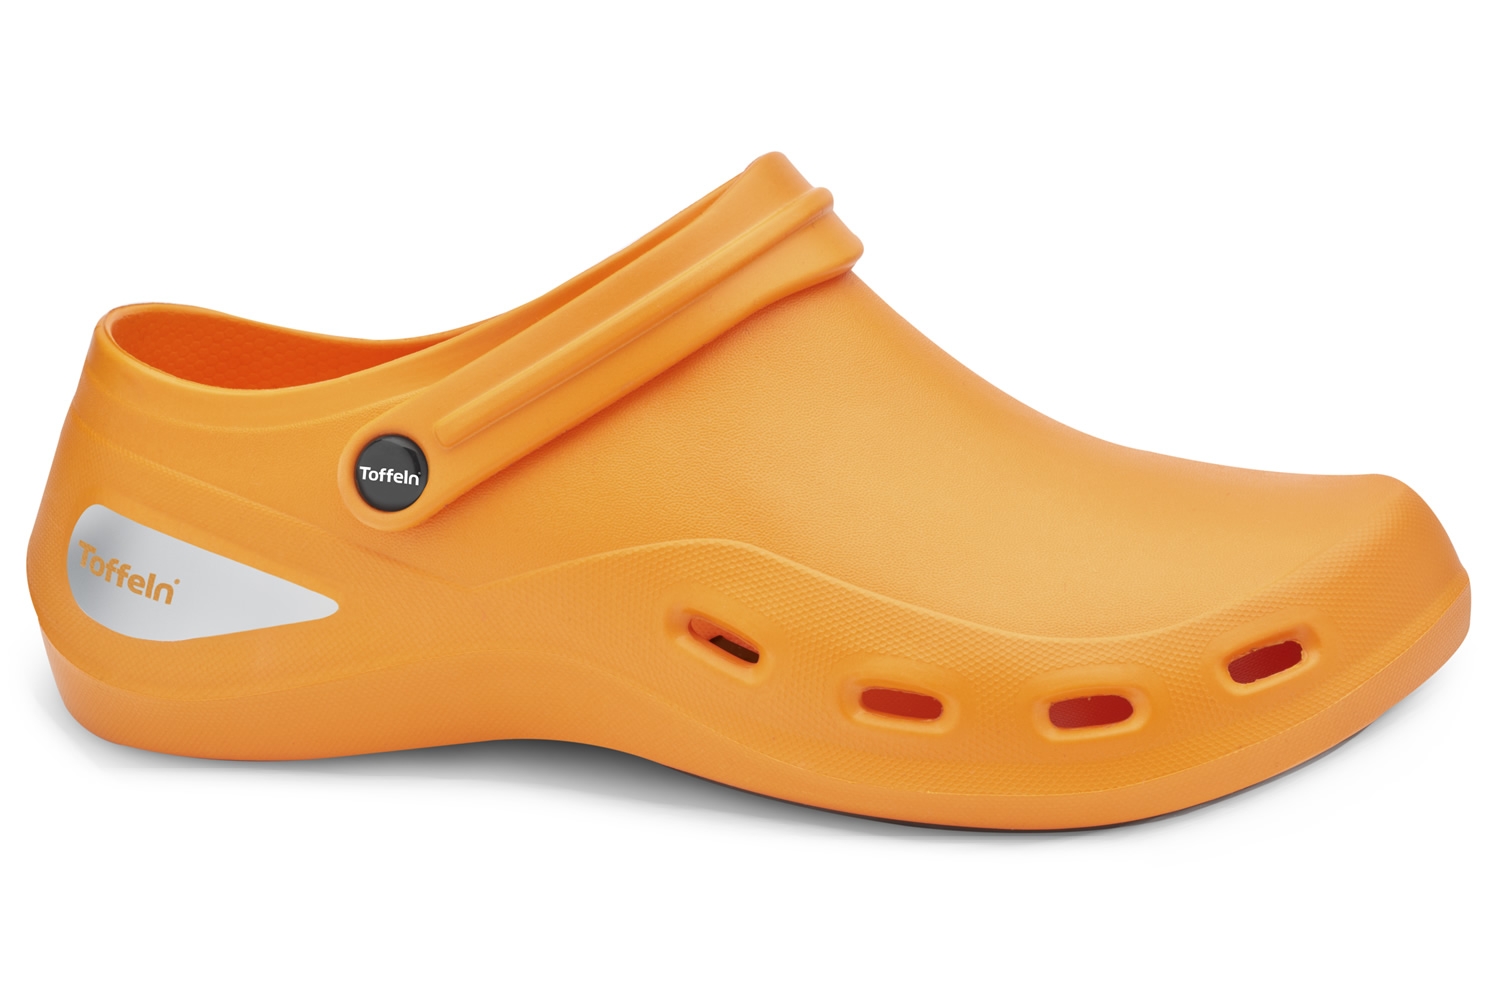 Toffeln Aktiv Klog 0230 - Orange - Washable Work Shoes | eBay